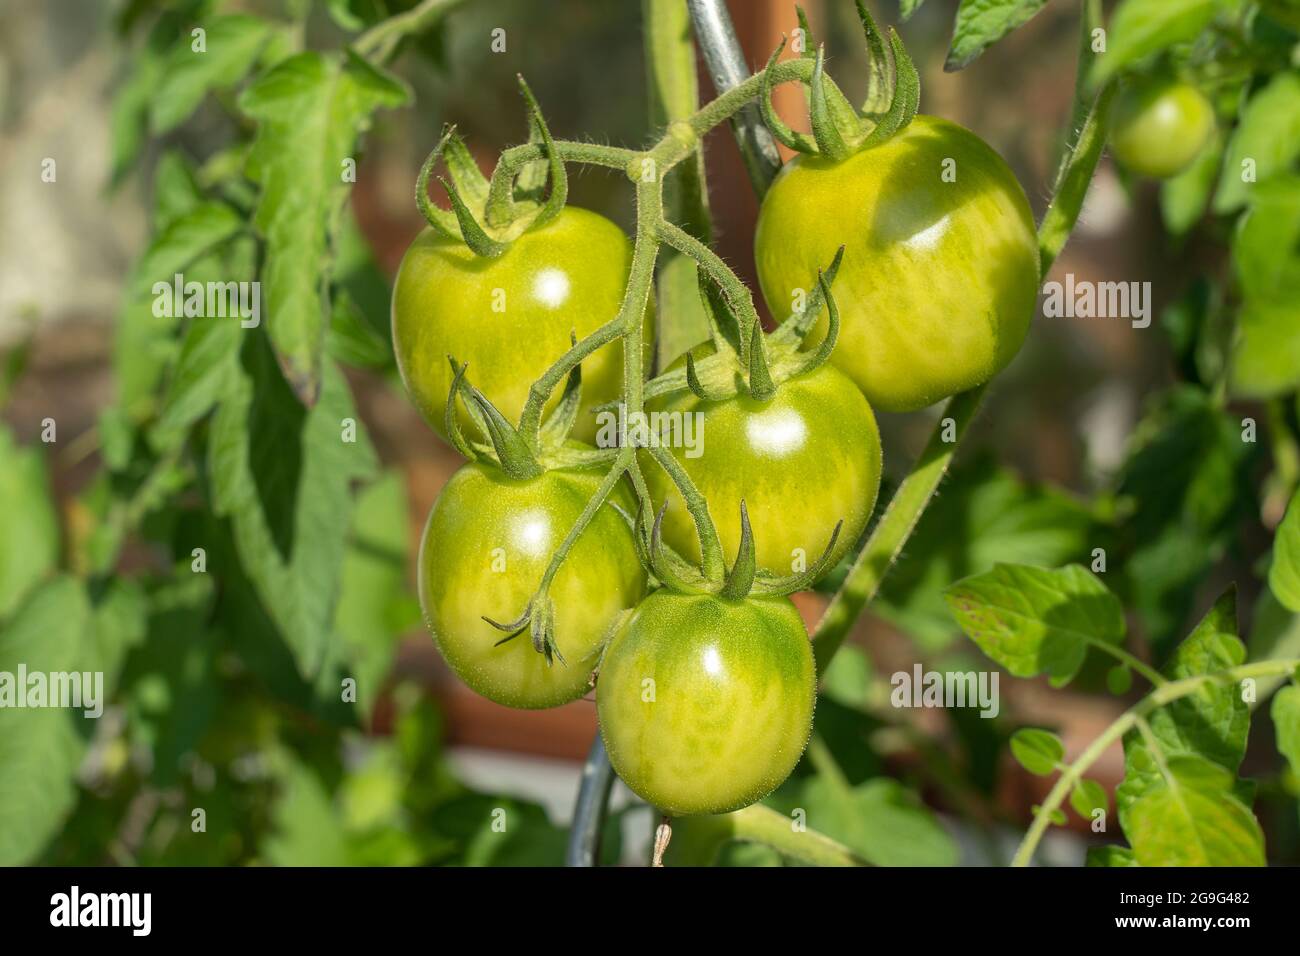 Tomate (Lycopersicon esculentum), fruit vert sur une plante. Allemagne Banque D'Images